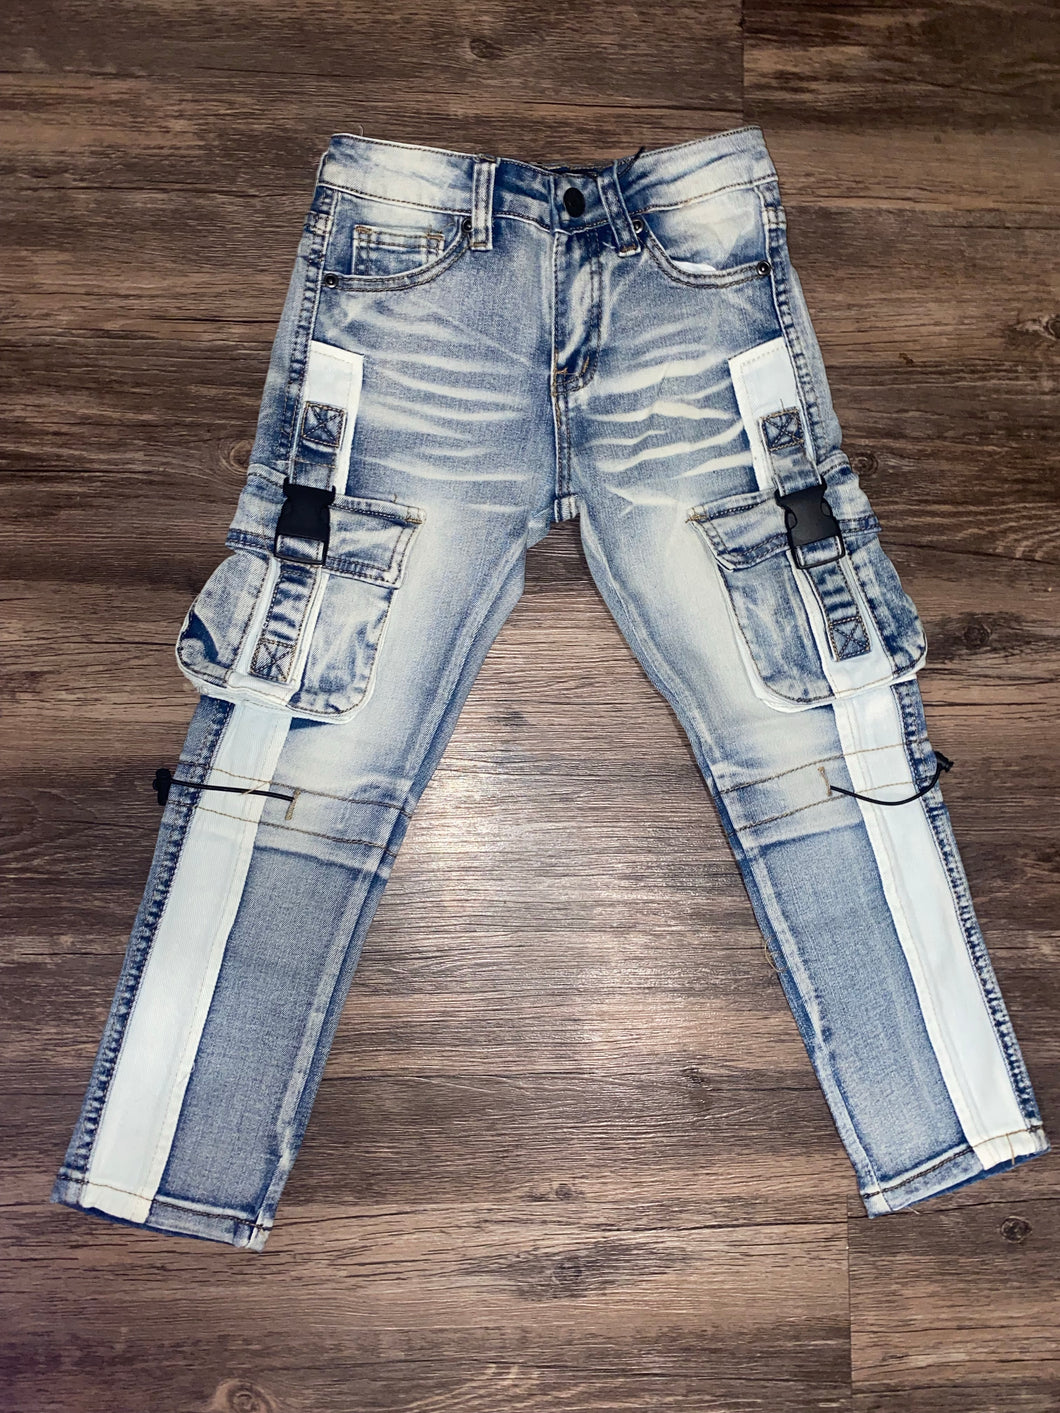 8&9 CLOTHING Strapped Up Slim Grey Washed Denim Jeans Teal  PSGRYTEA-LIGHTGREYTEAL - Karmaloop